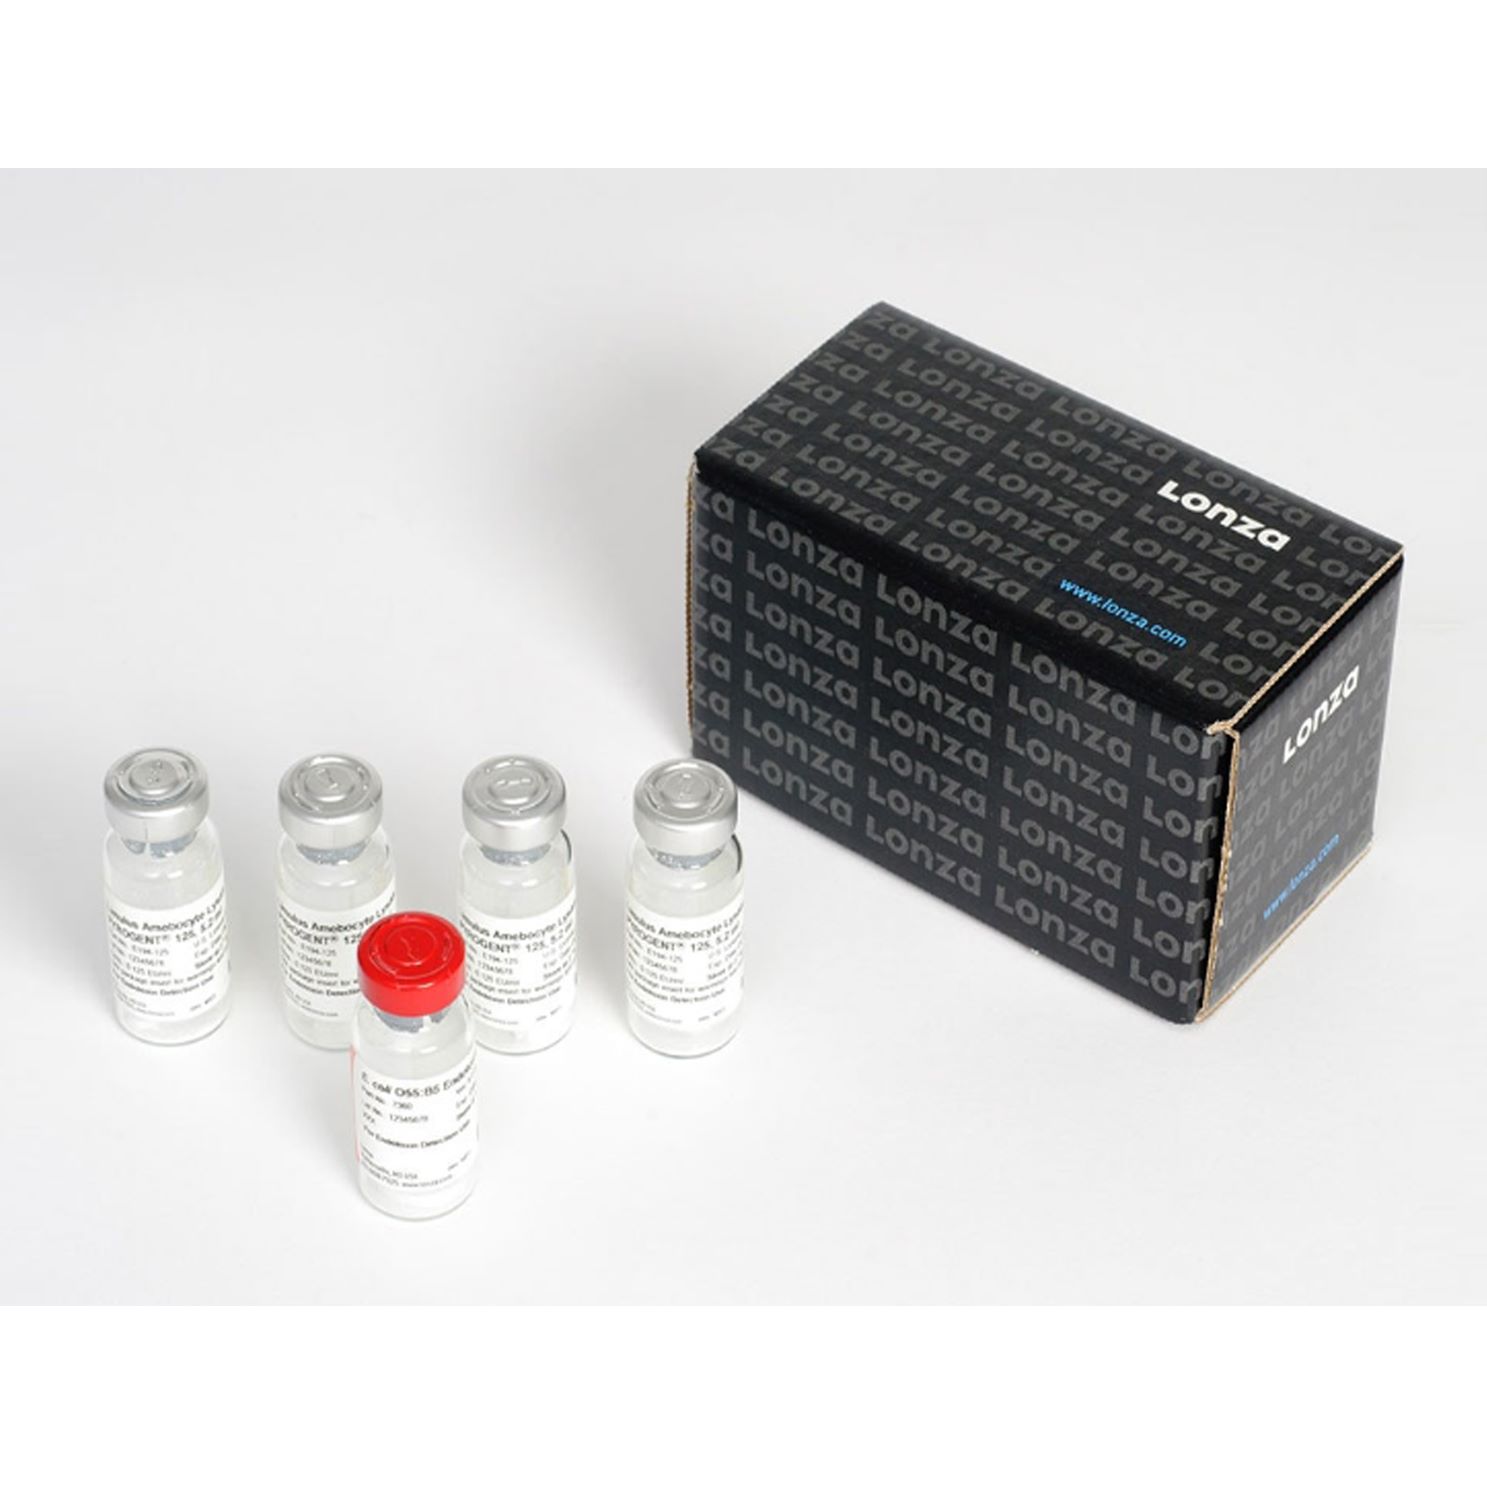 LONZA N289-06 PYROGENTTM Plus凝胶法鲎试剂 检测(含对照)， 单管 内毒素对照品1x 1mL 24次，单管